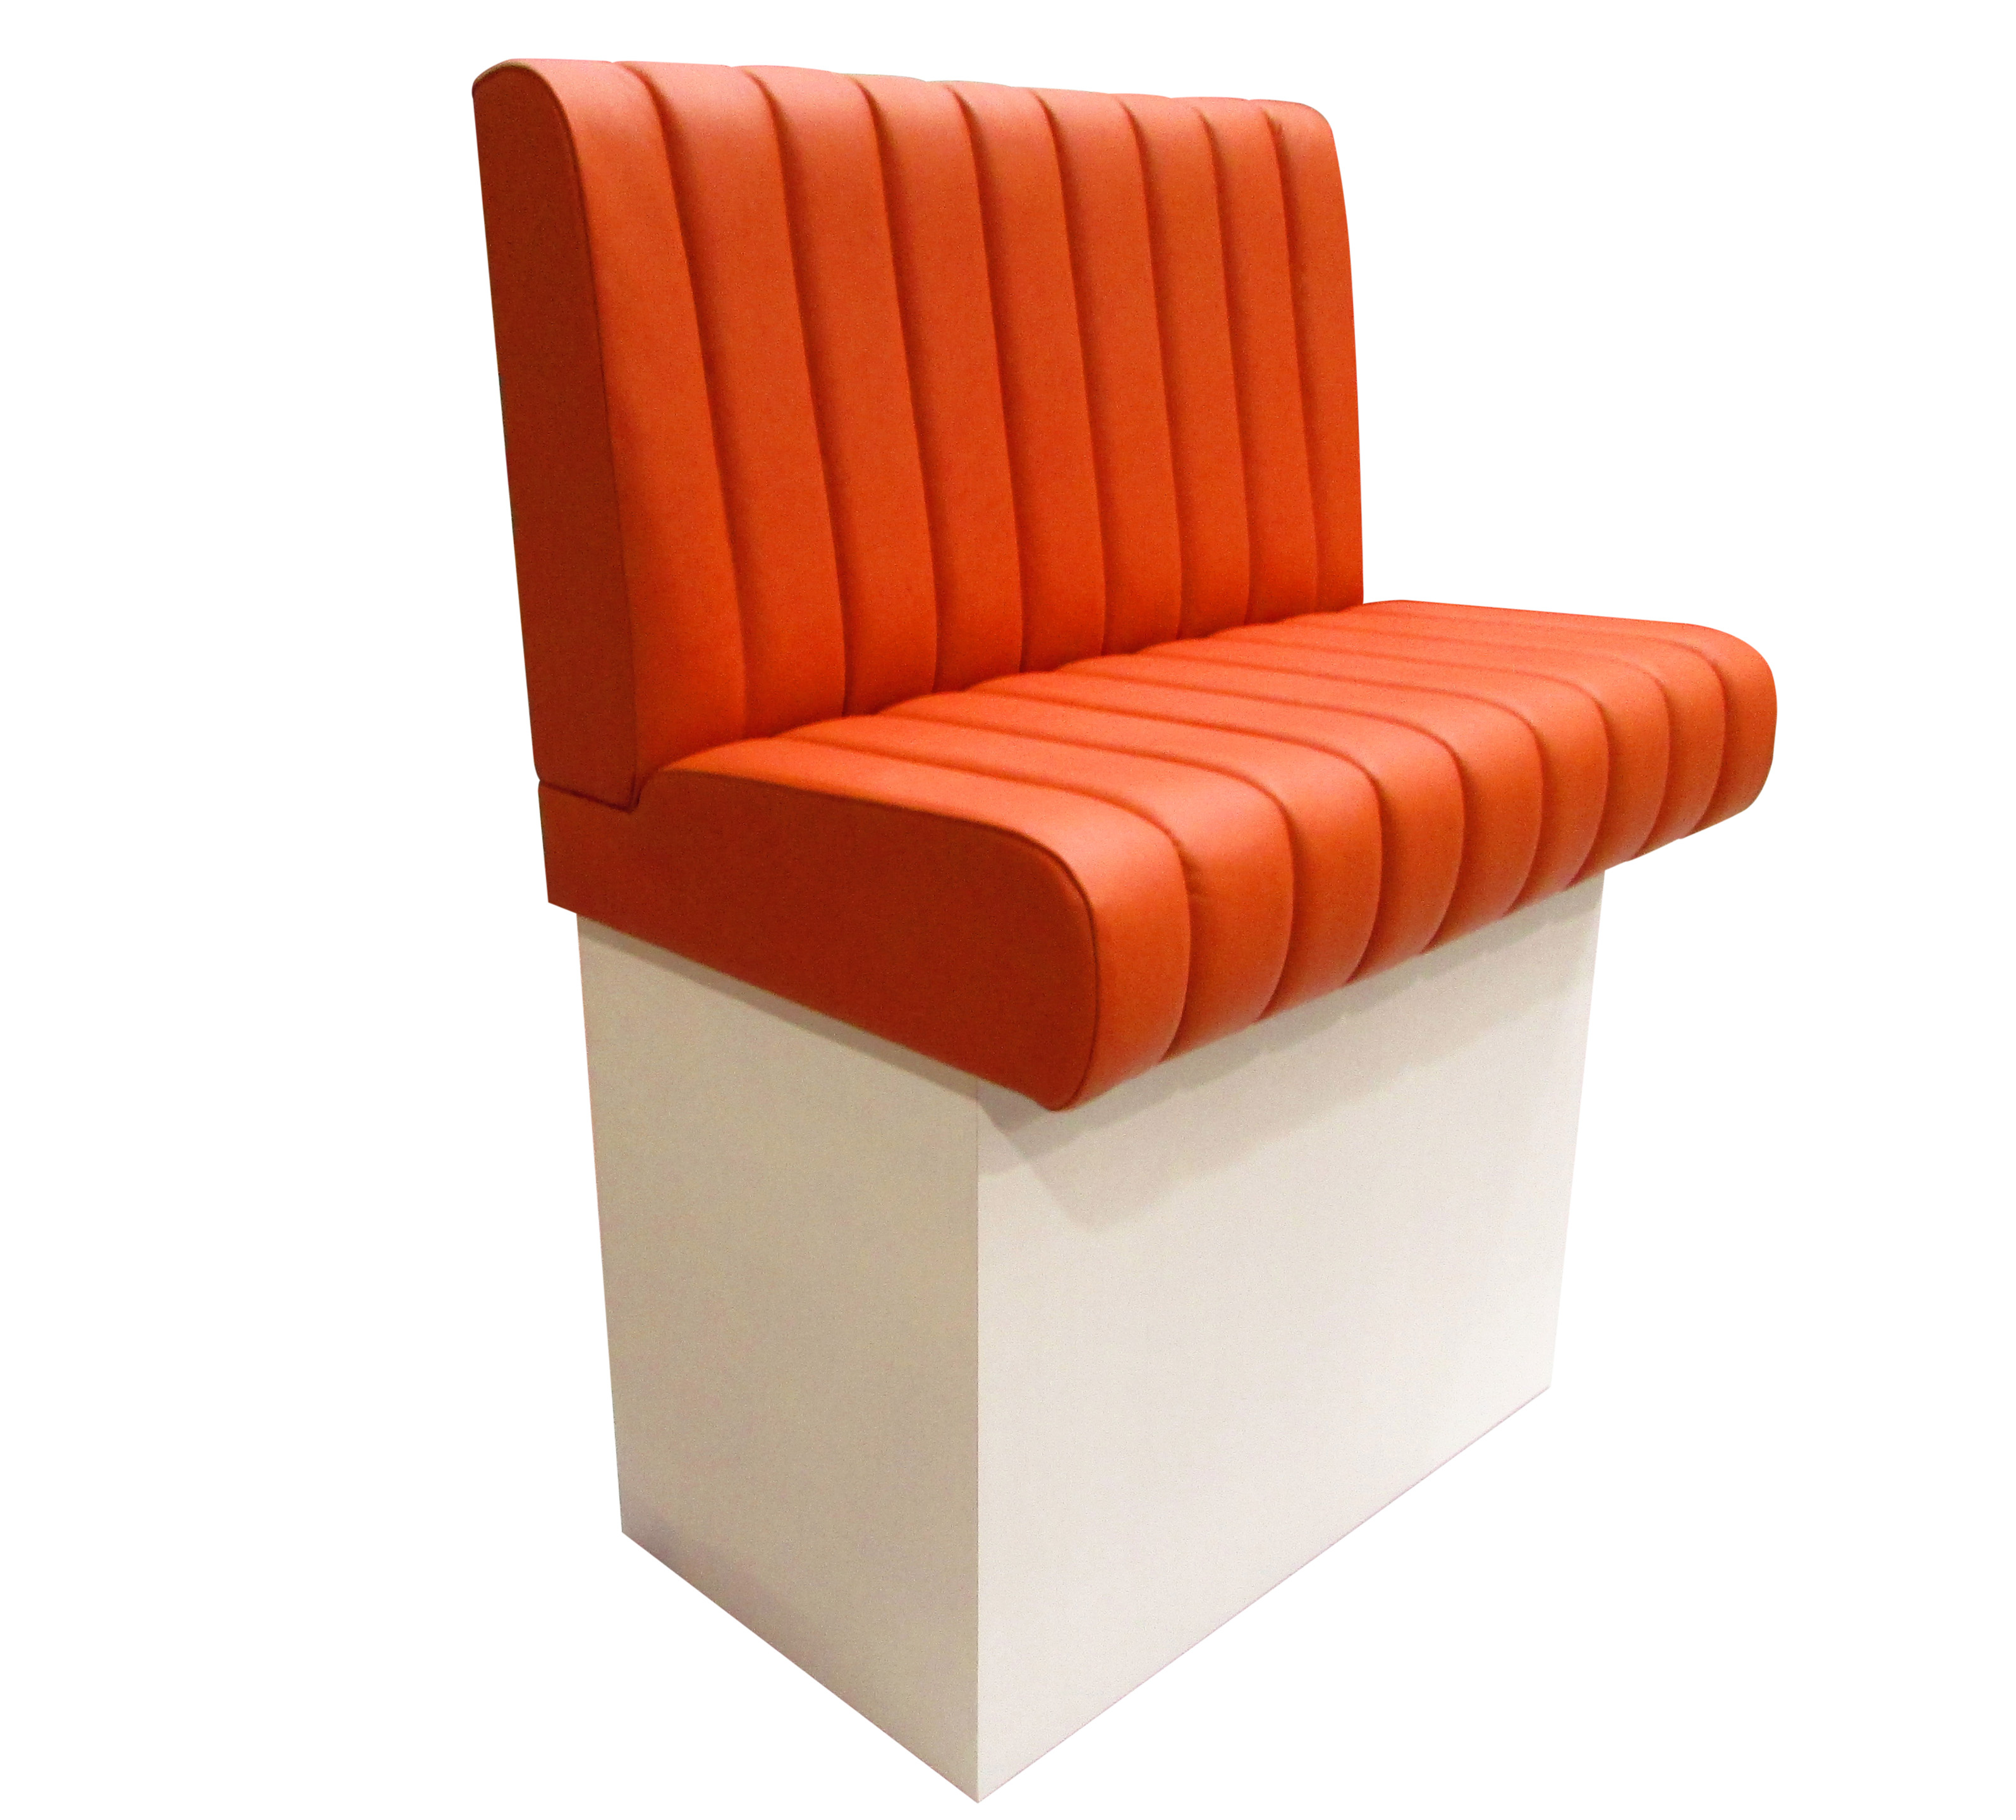 Perspektivische Ansicht der Vollpolsterbank Modell 2013 als hochbank mit geschlossenem weißen Sockel. Sitz und Rücken mit orangenem Kunstleder bezogen und mit Pfeifensteppung versehen. 